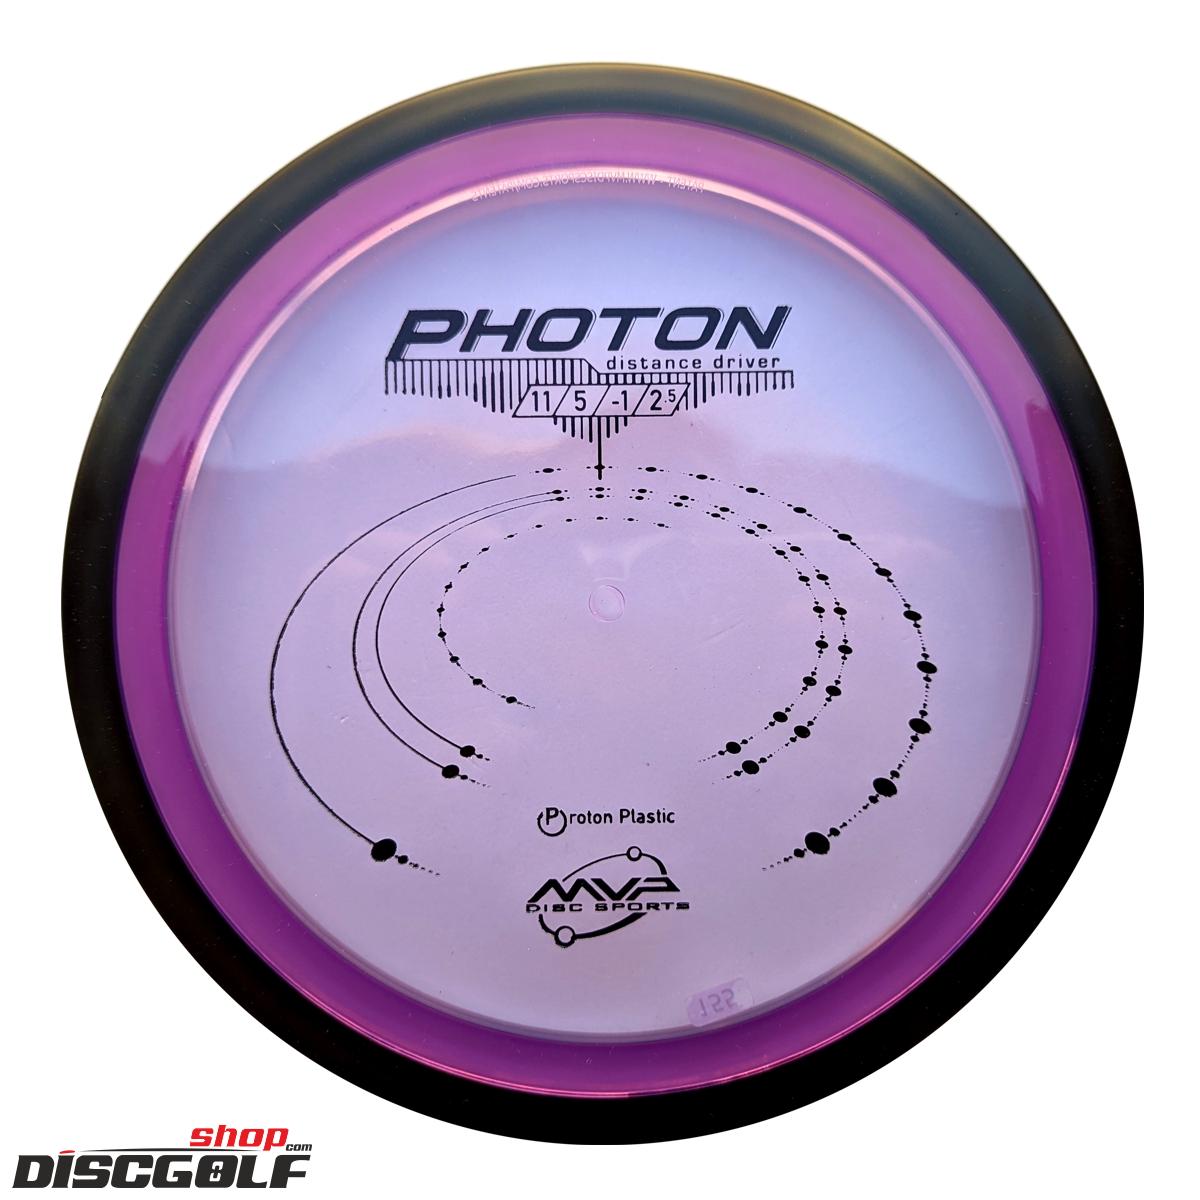 MVP Photon Proton (discgolf)